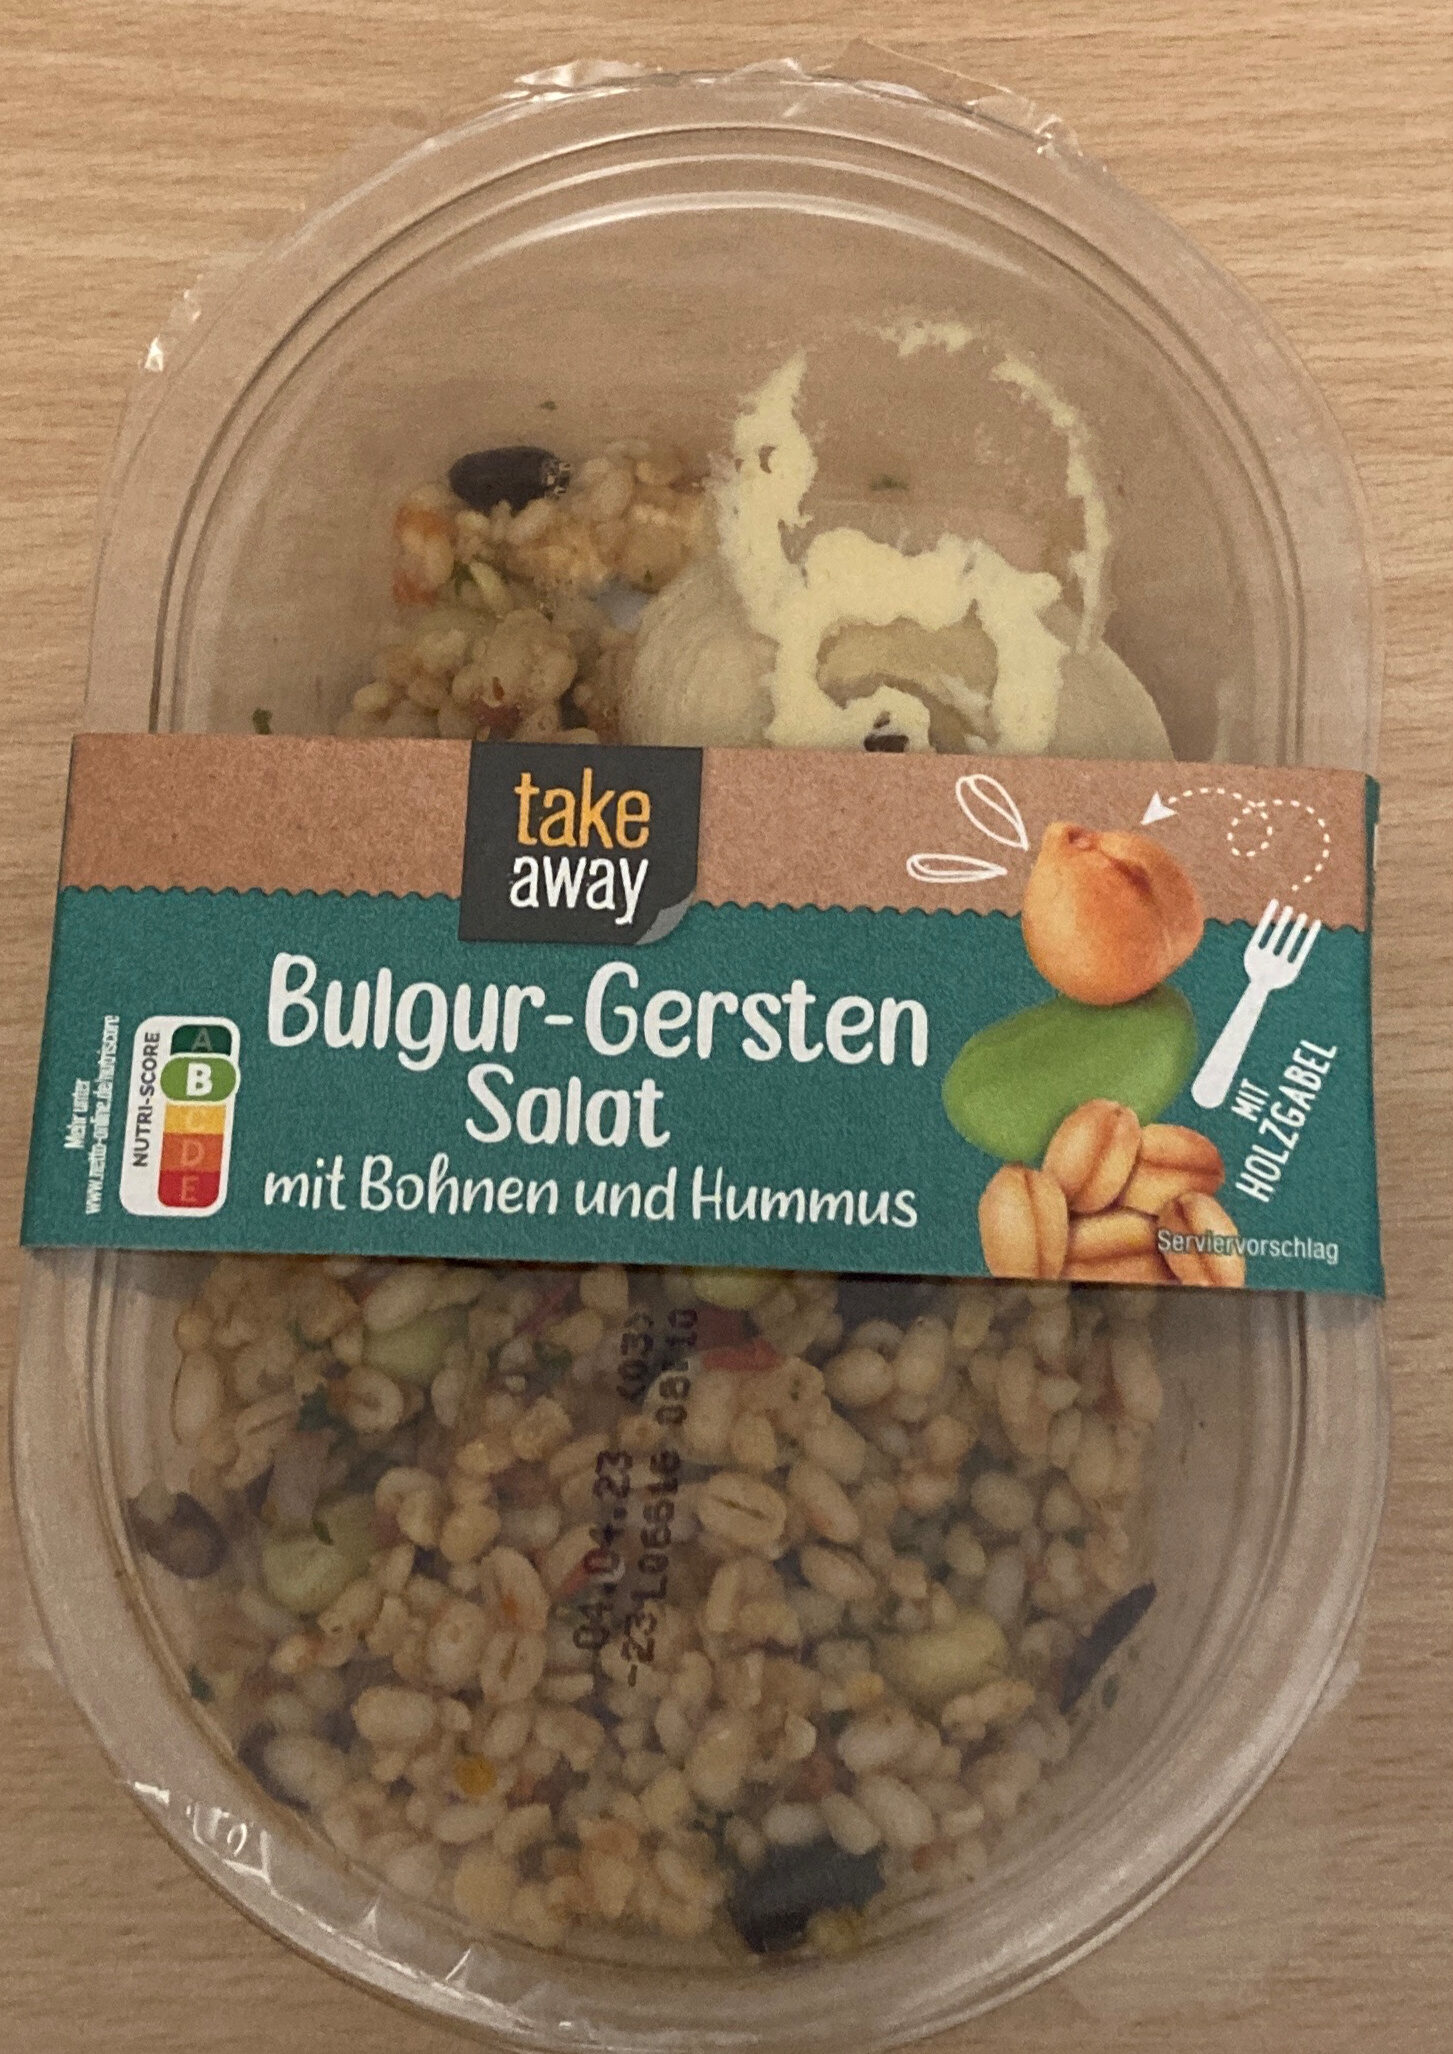 Bulgur-Gersten-Salat - Produkt